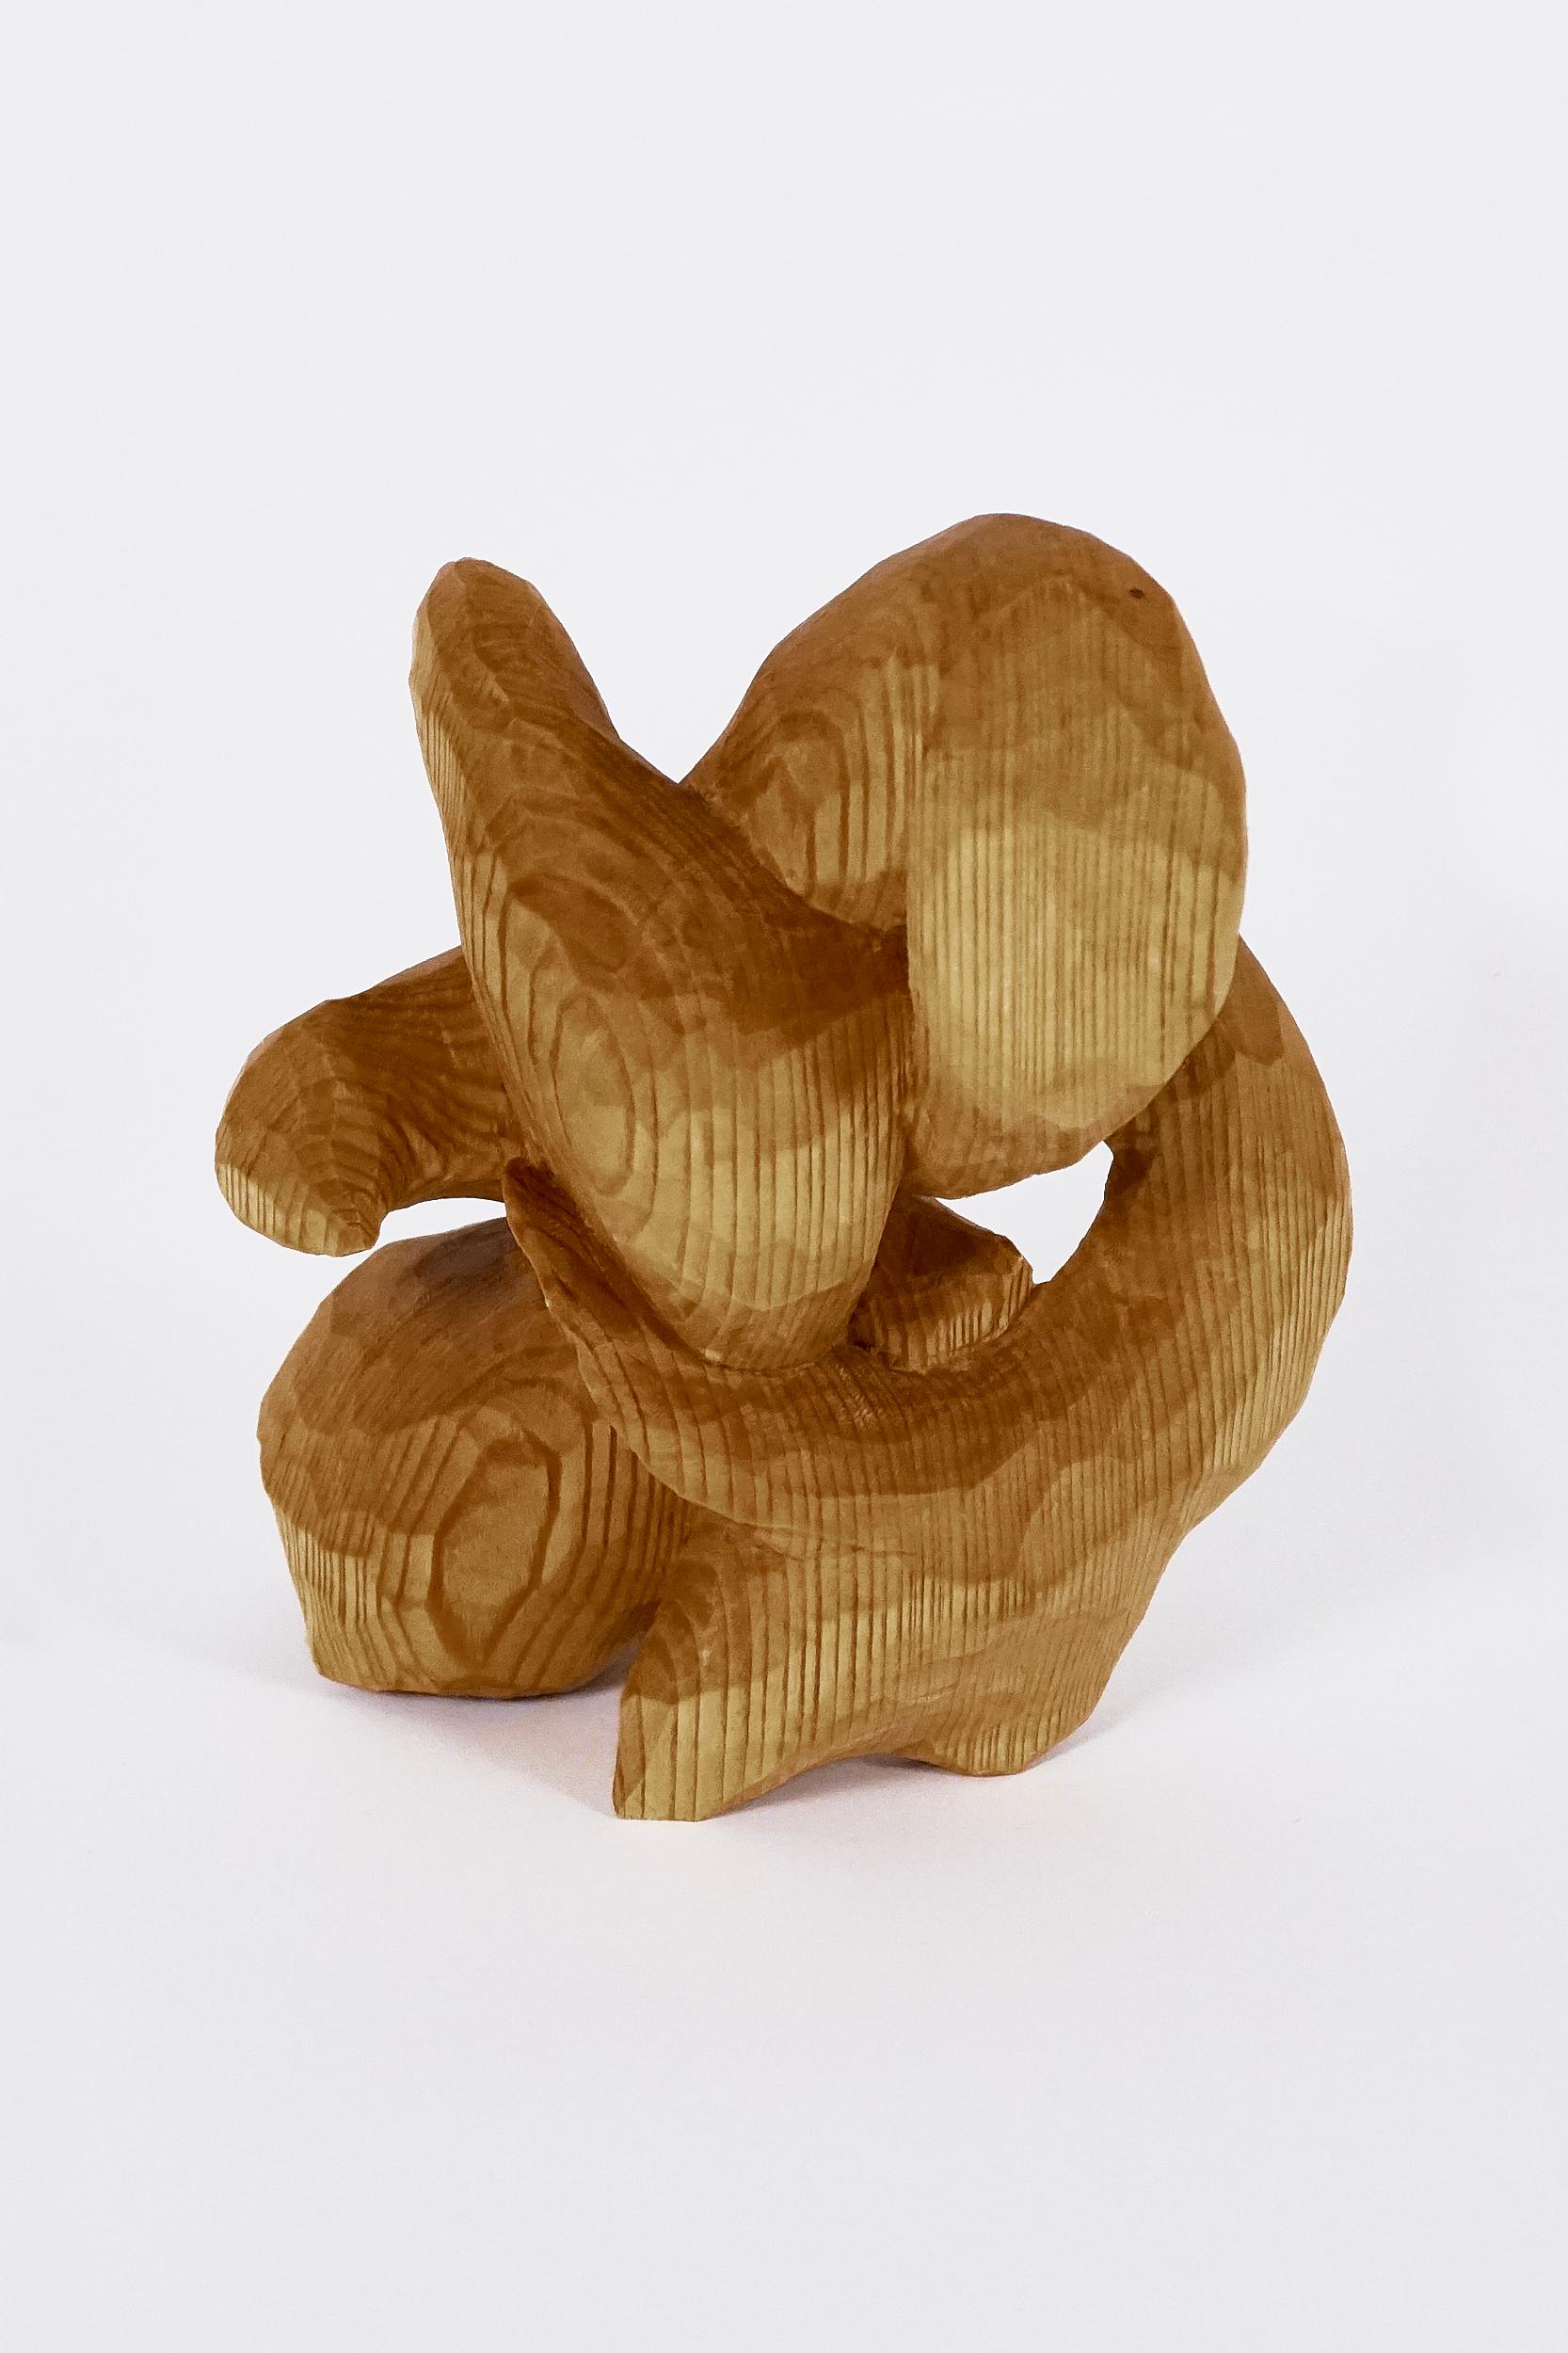 Carved Investigation Eleven, Carved wood sculpture - Sculpture by Jared Abner